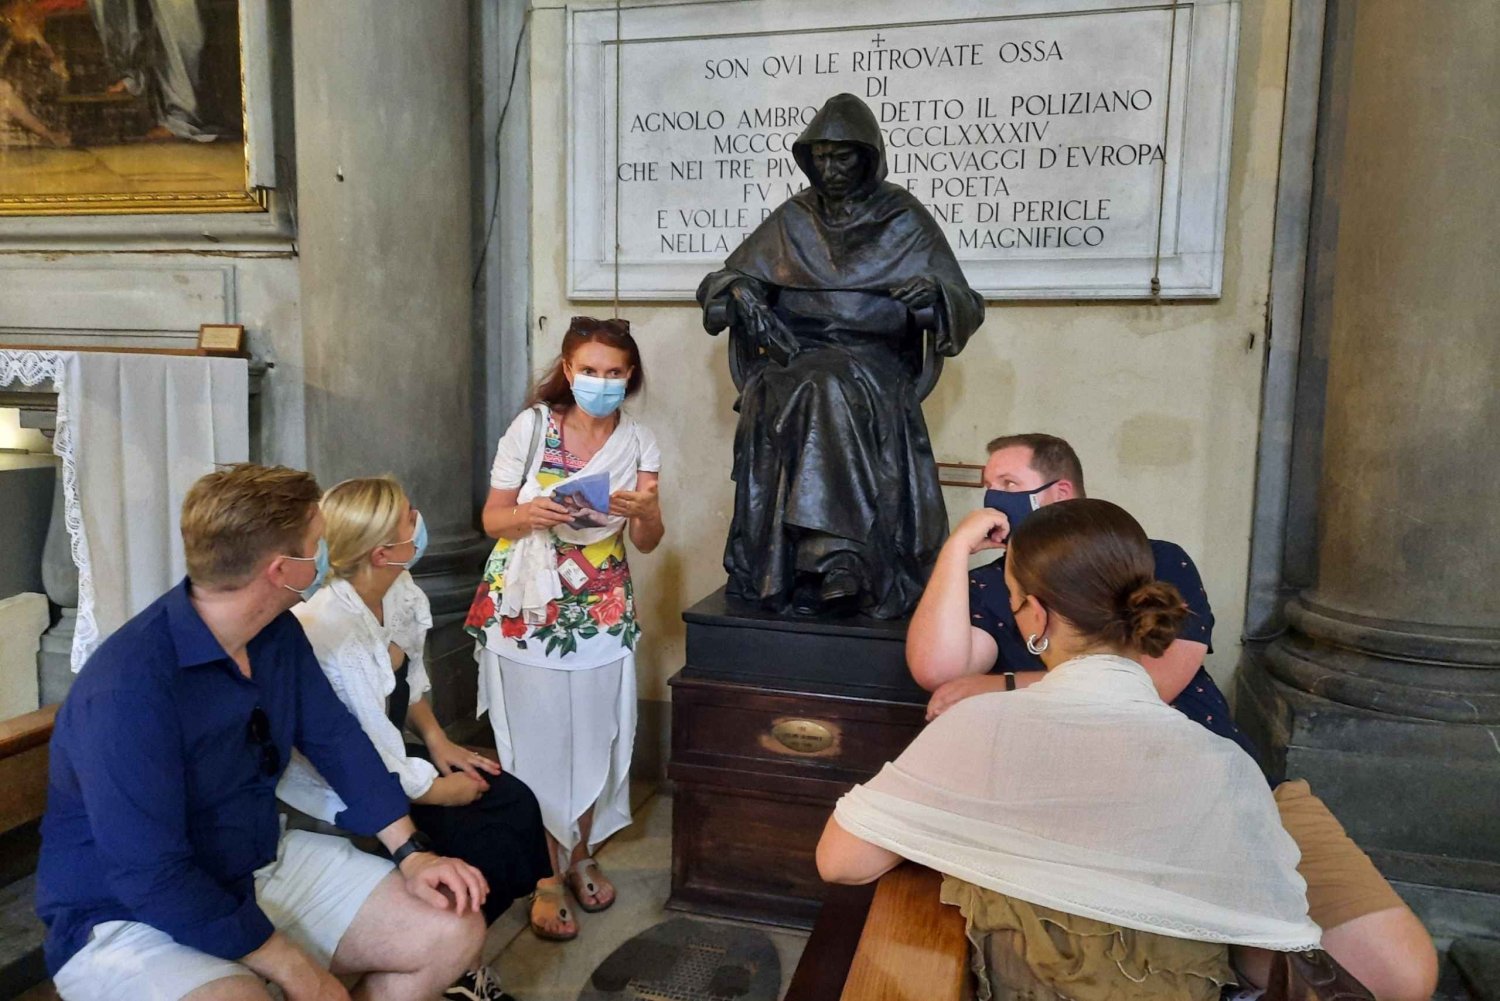 Firenze: Okkult og esoterisk vandretur for nysgjerrige